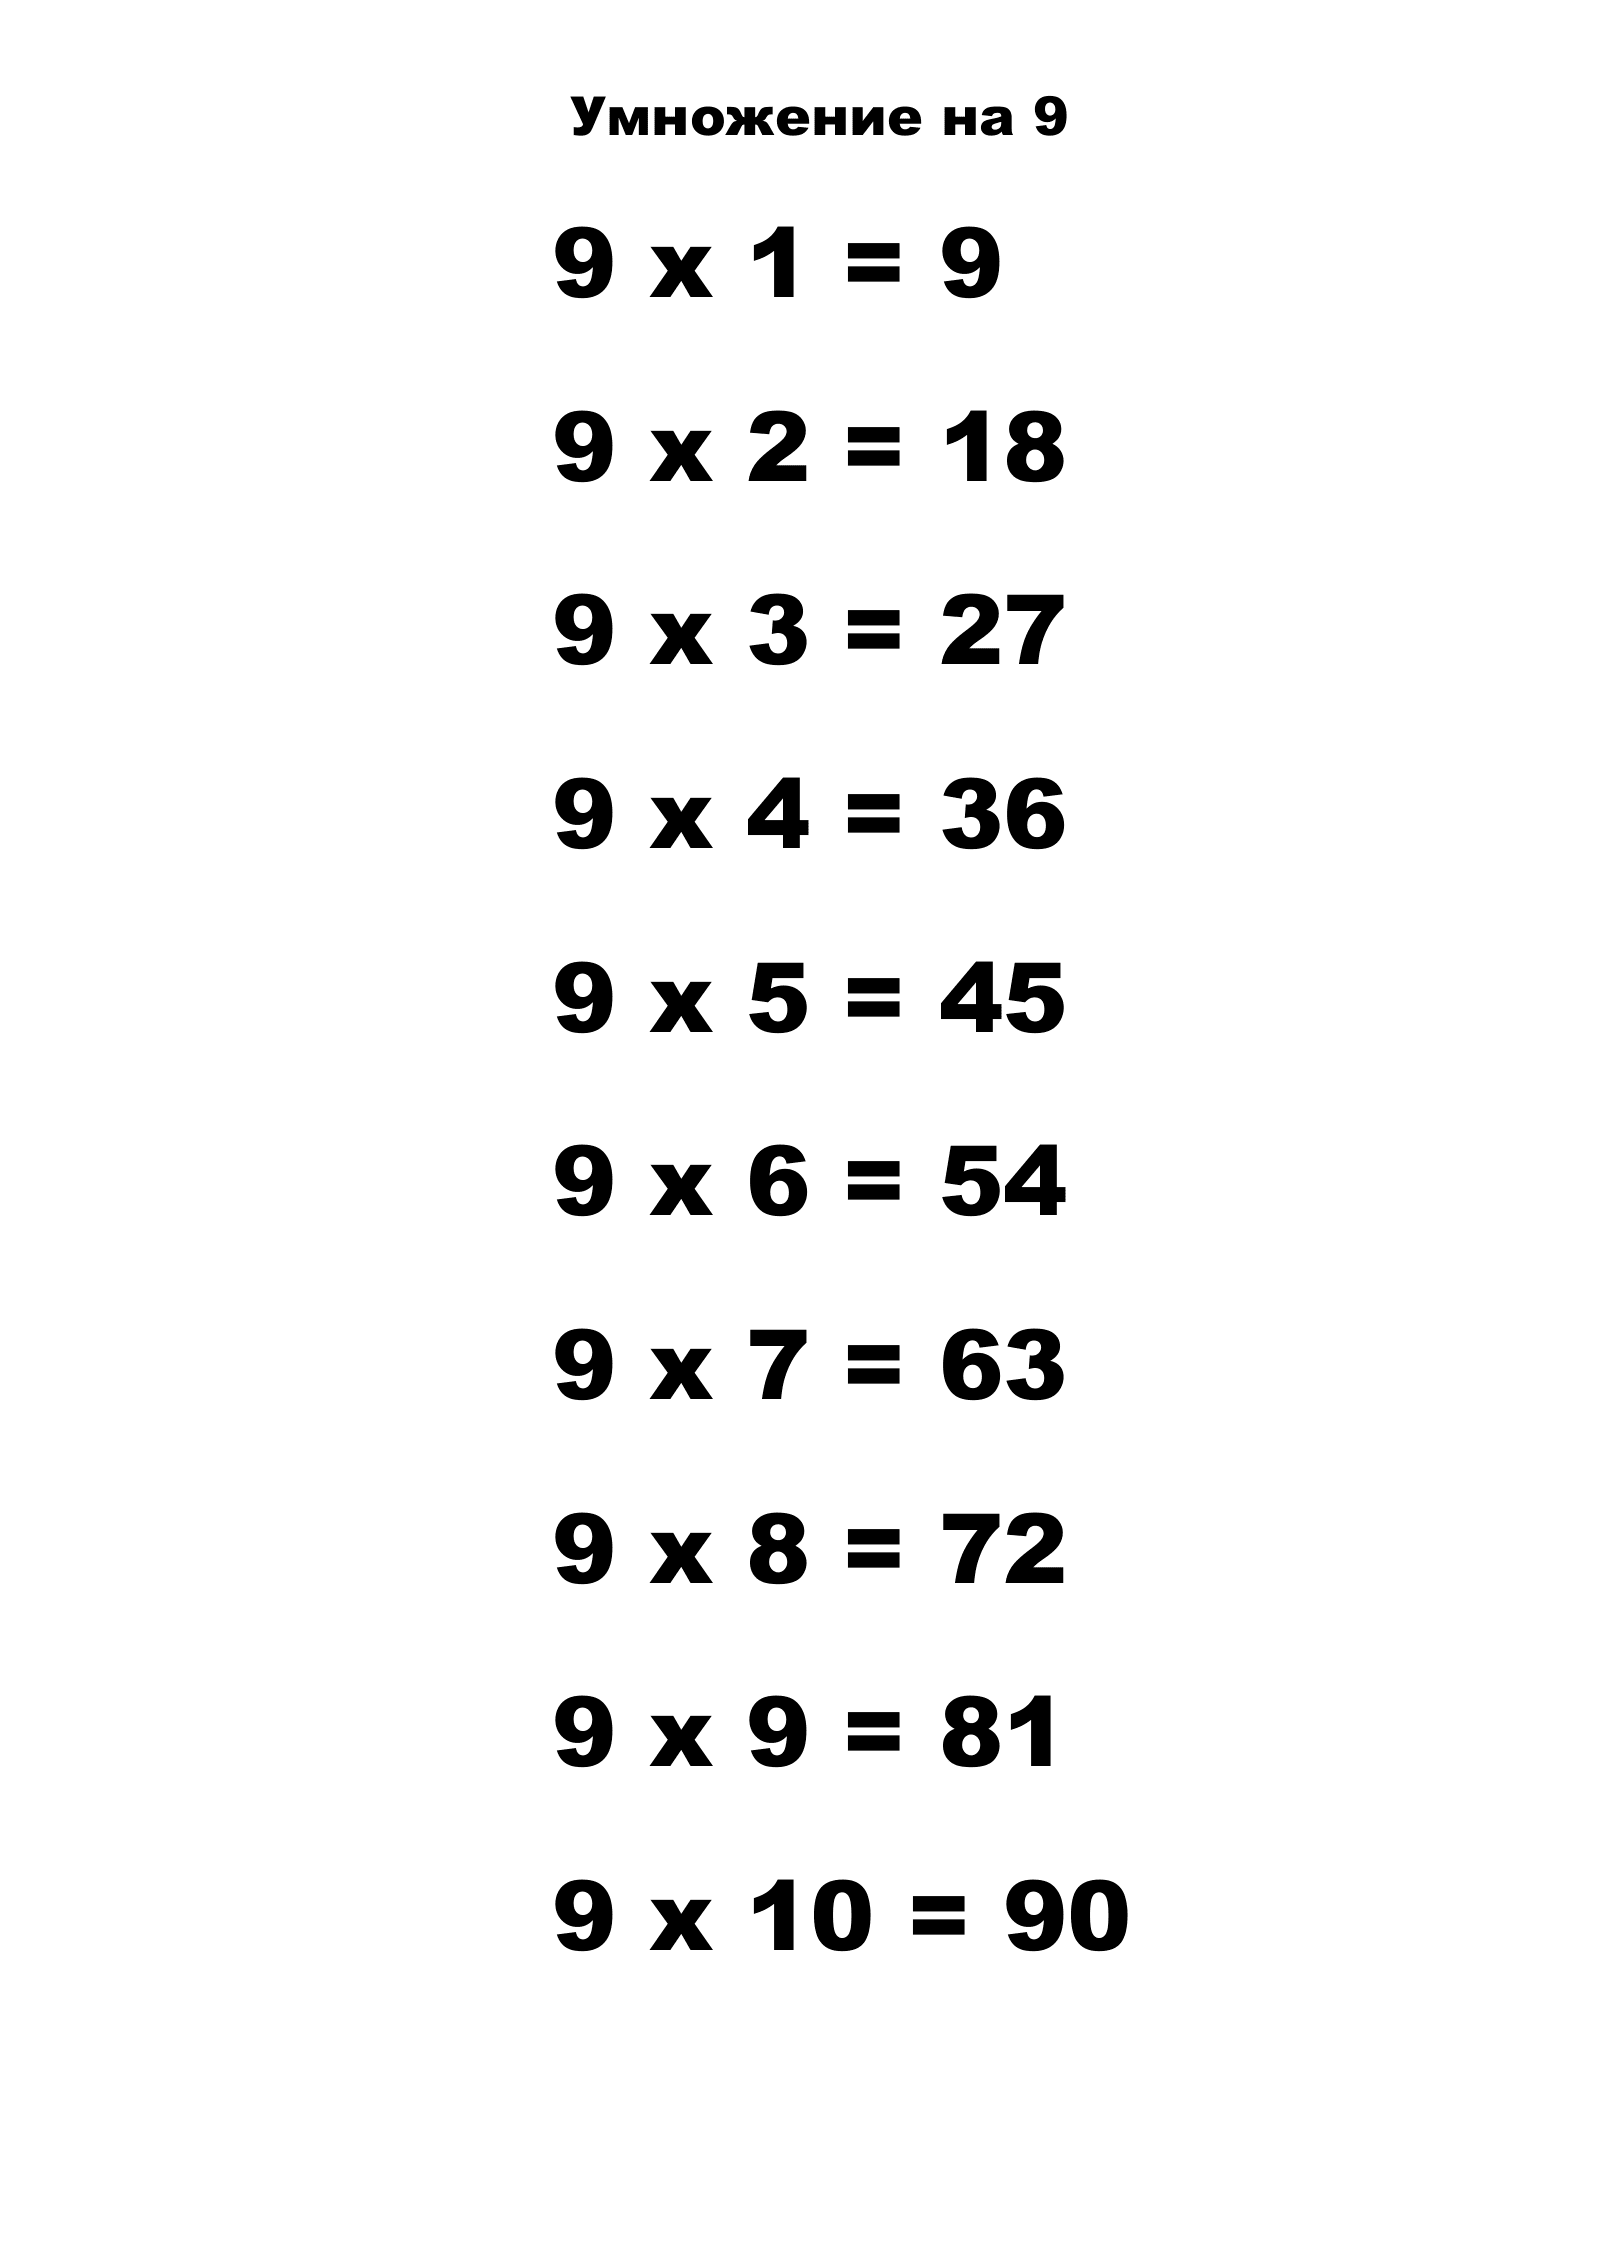 Таблица умножения на 9.